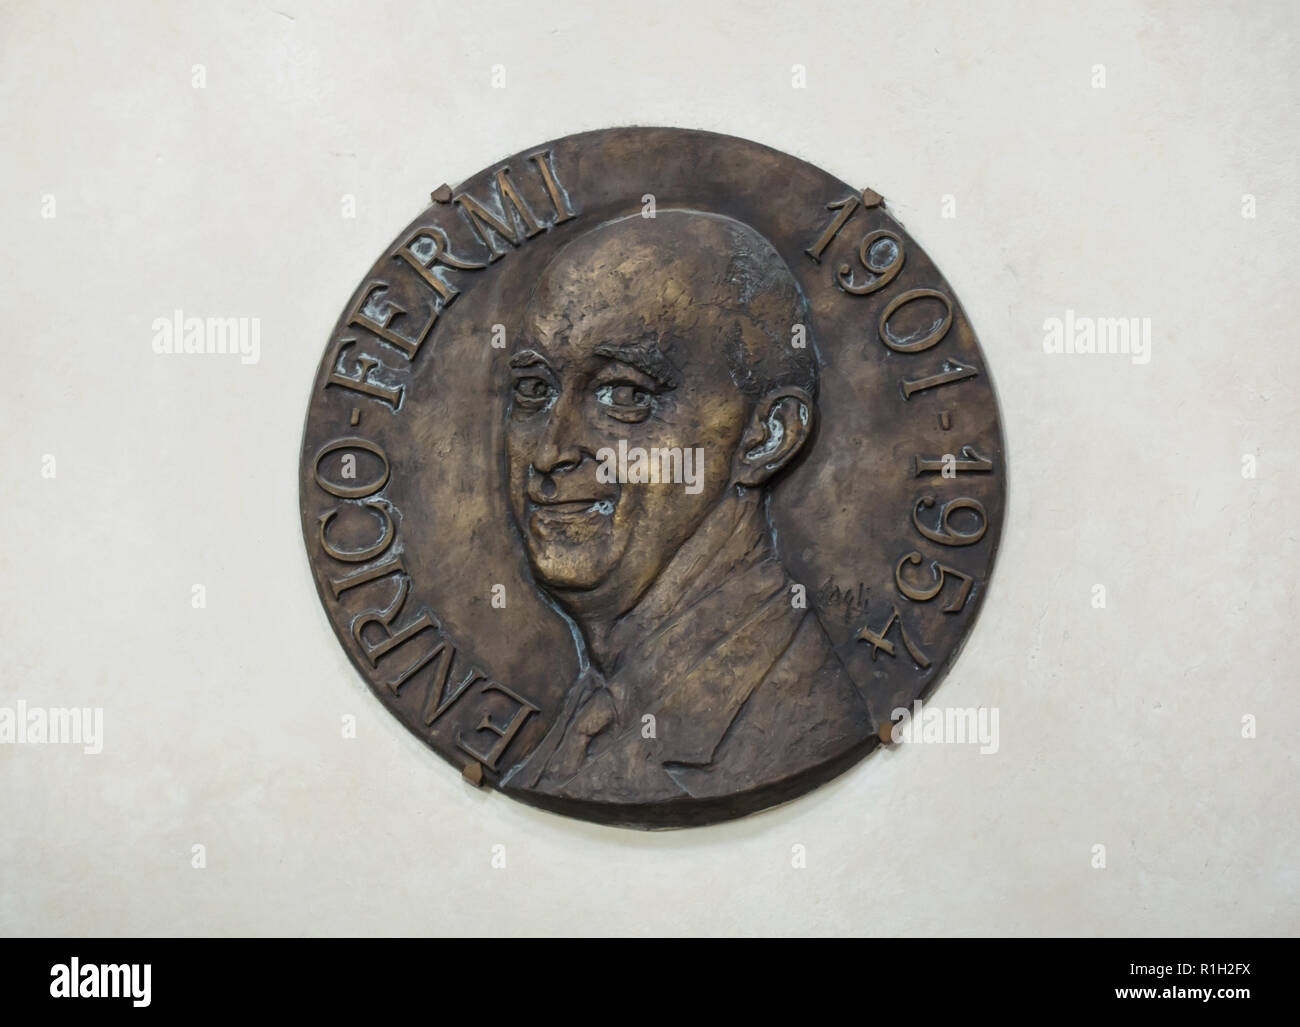 Commemorare la placca al fisico italiano Enrico Fermi, che è stato il creatore del primo reattore nucleare nel mondo, nella Basilica di Santa Croce (Basilica di Santa Croce di Firenze, Toscana, Italia. Foto Stock